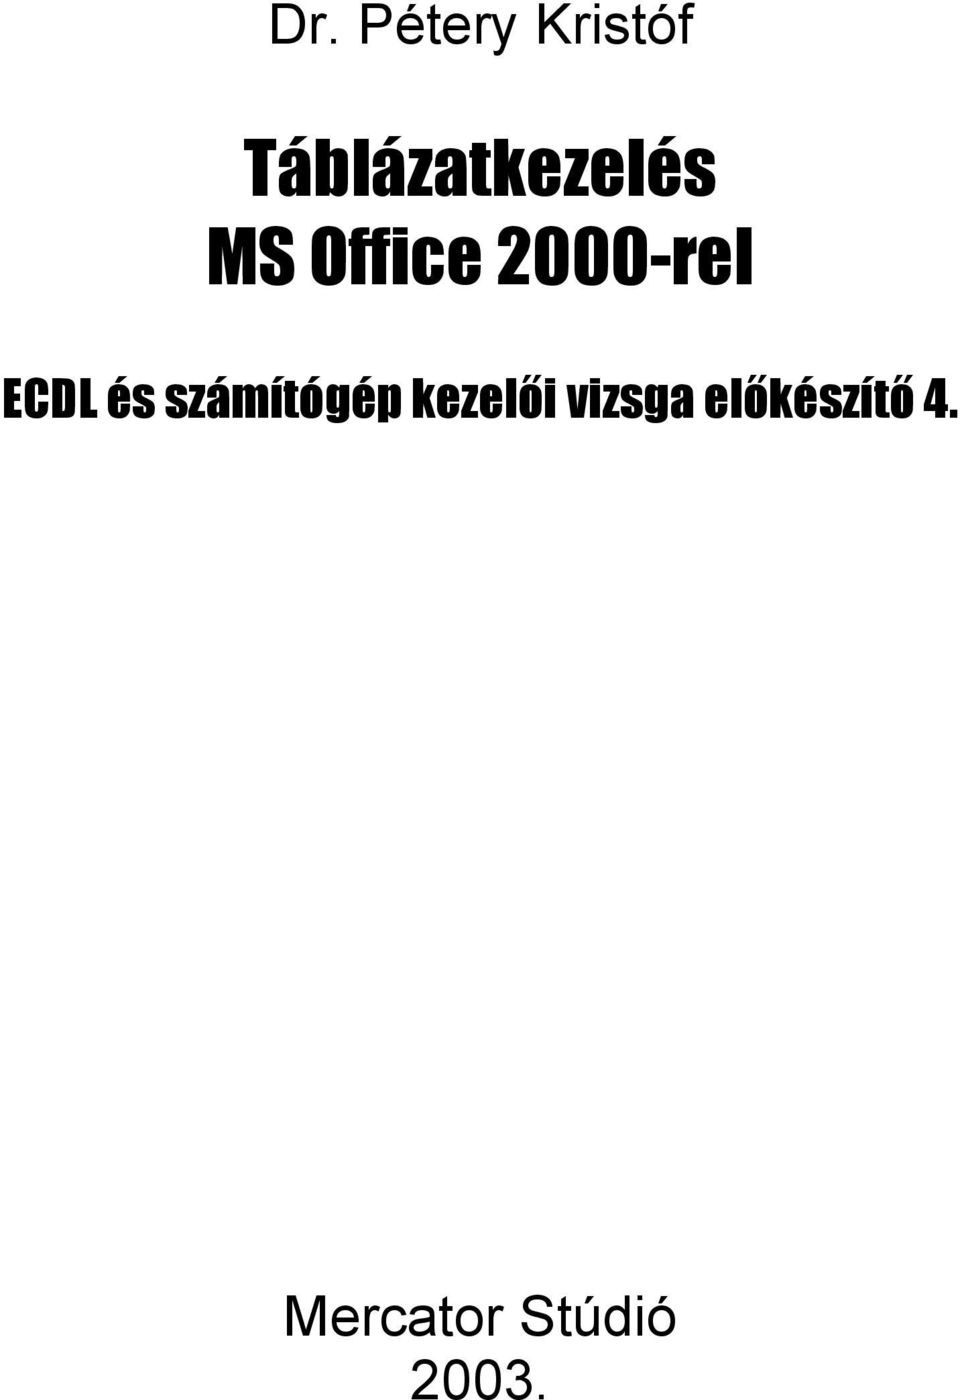 2000-rel ECDL és számítógép